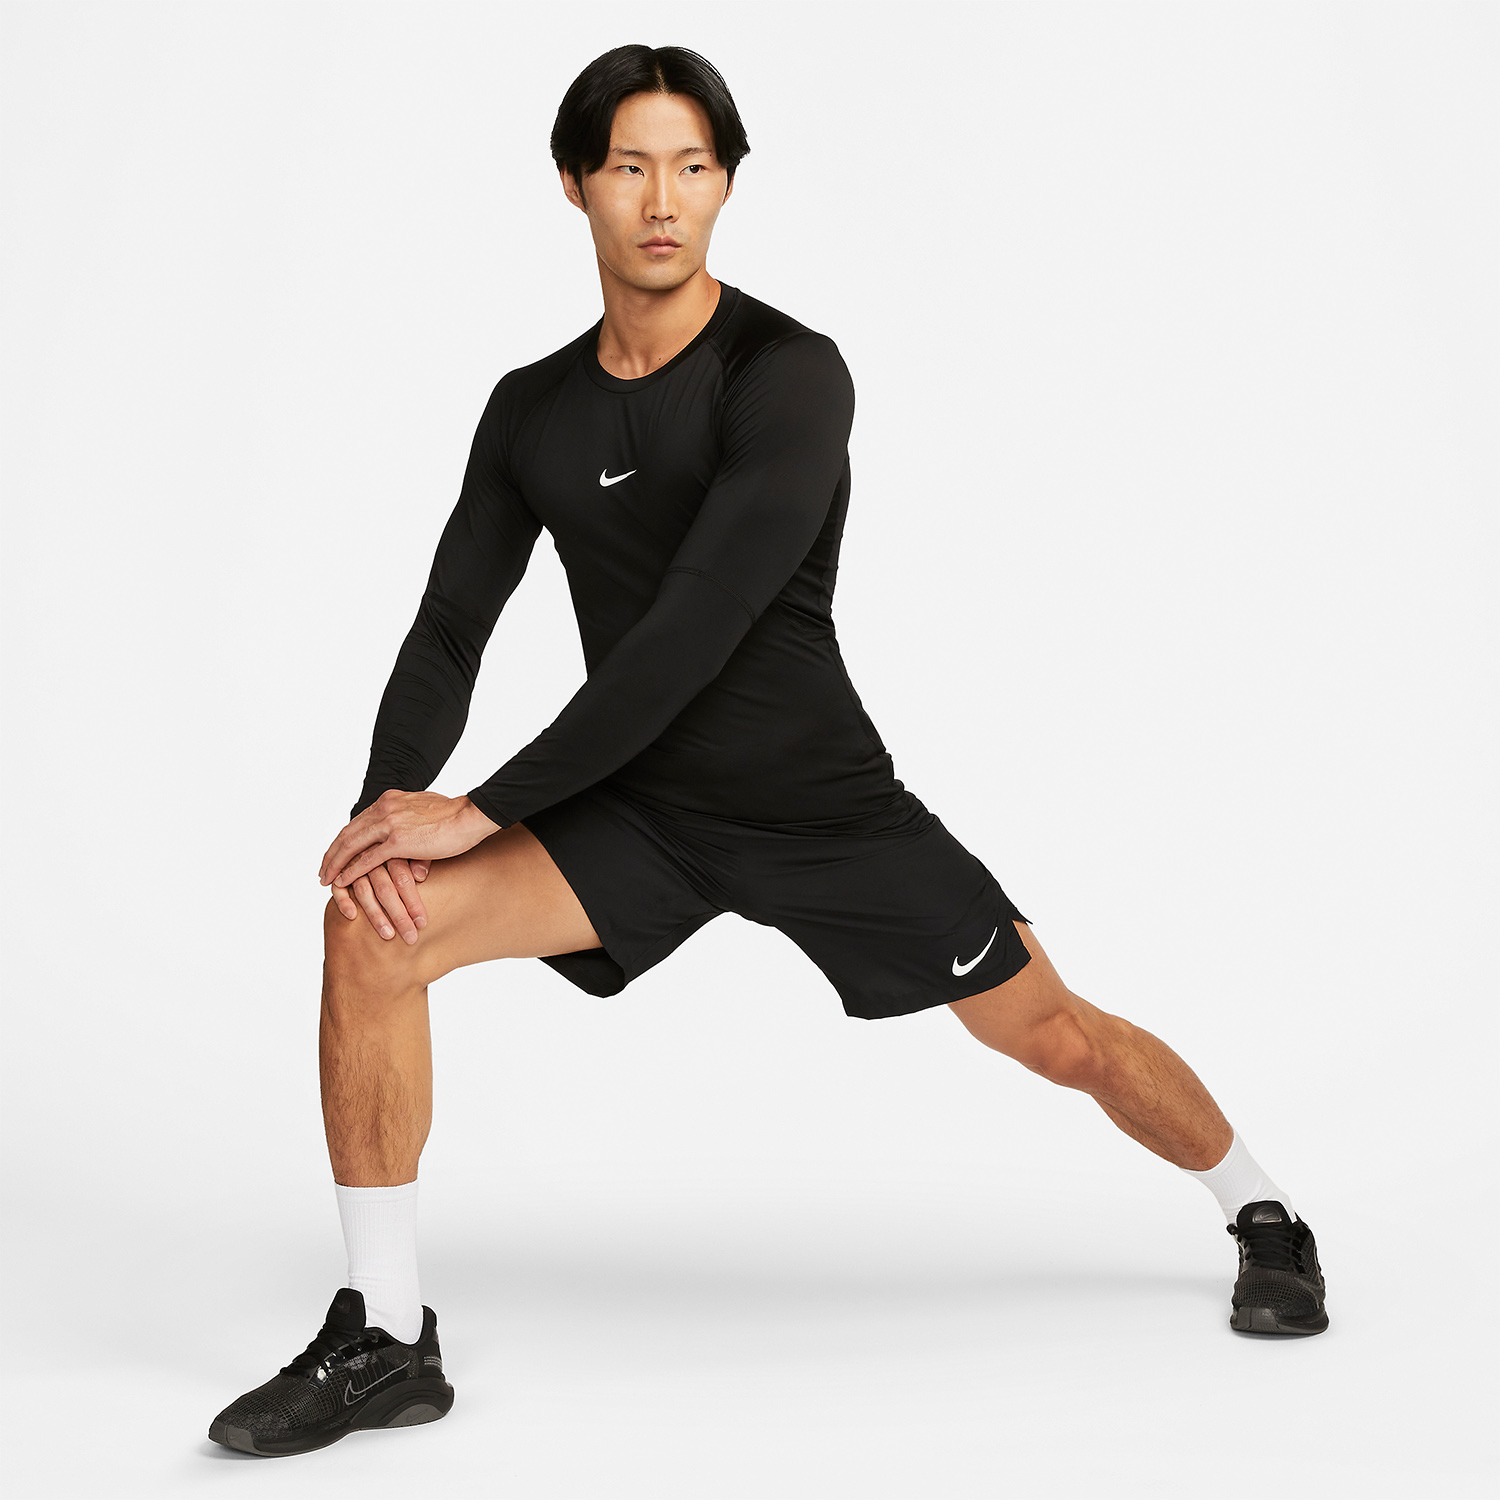 Nike Dri-FIT Logo Men's Training Shirt - Black/White